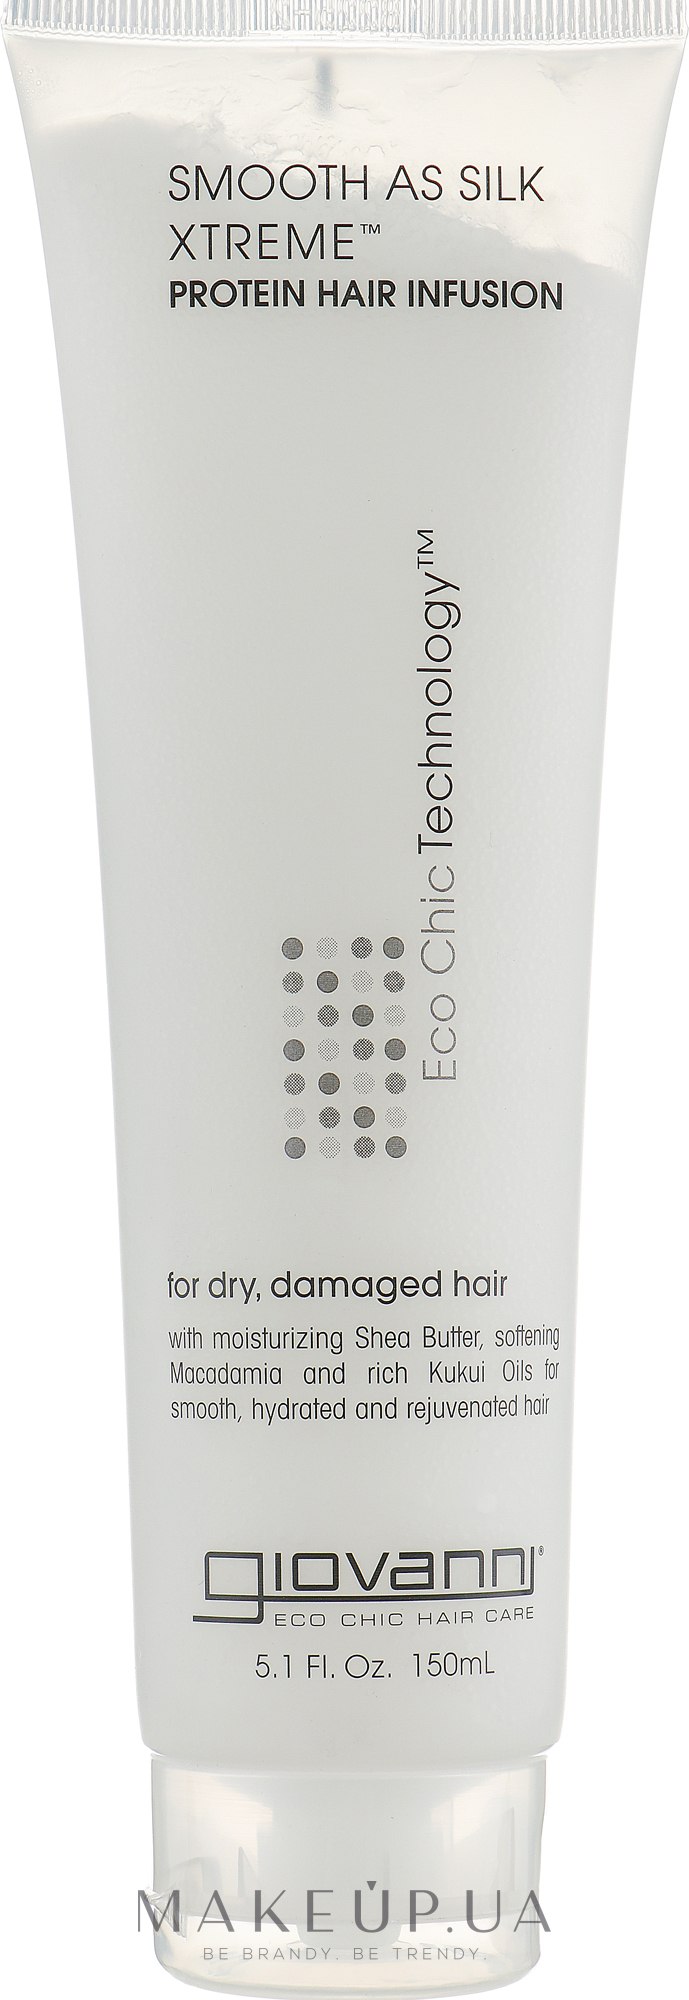 Протеиновая маска для волос - Giovanni Eco Chic Hair Care Protein Hair Infusion — фото 150ml